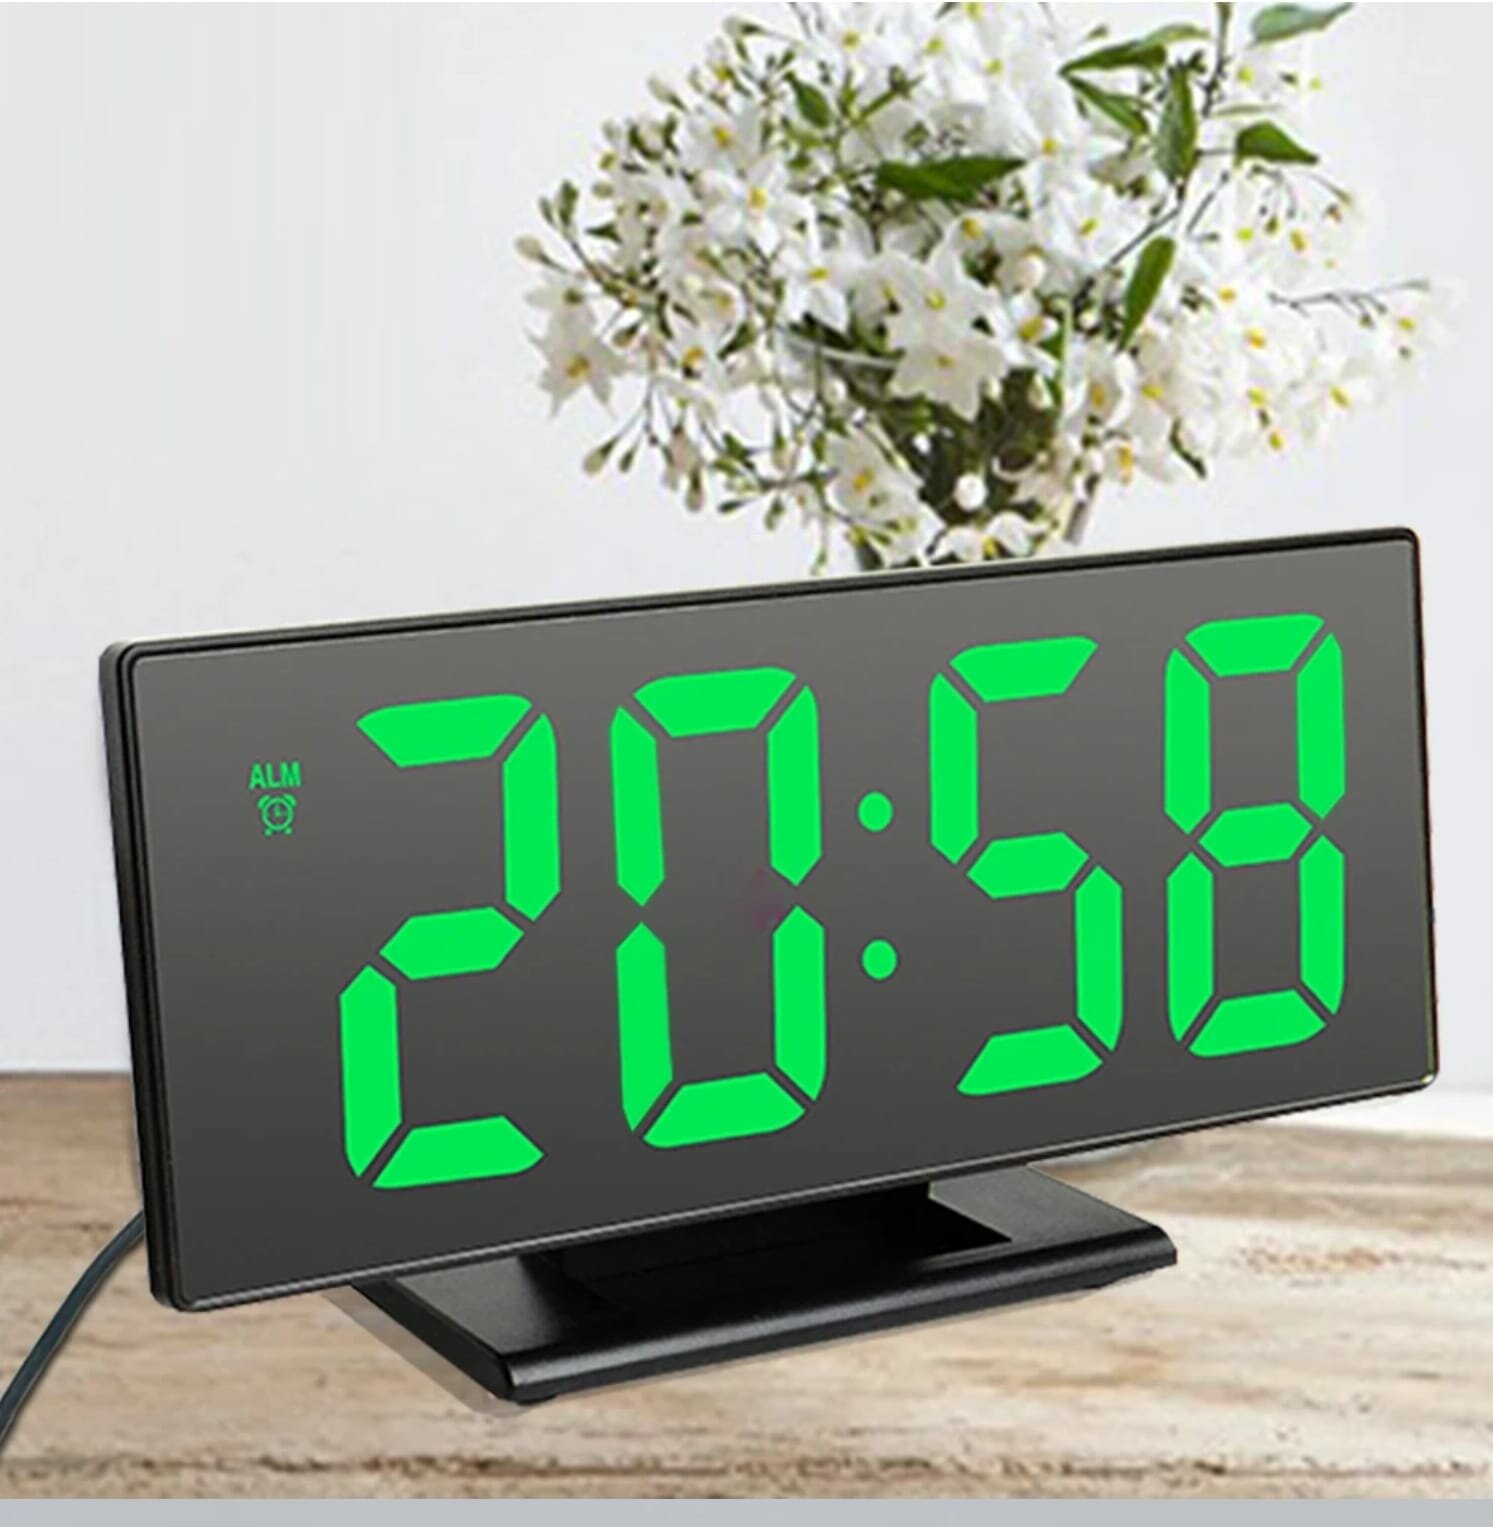 "Часы с будильником" - электронные настольные часы от сети